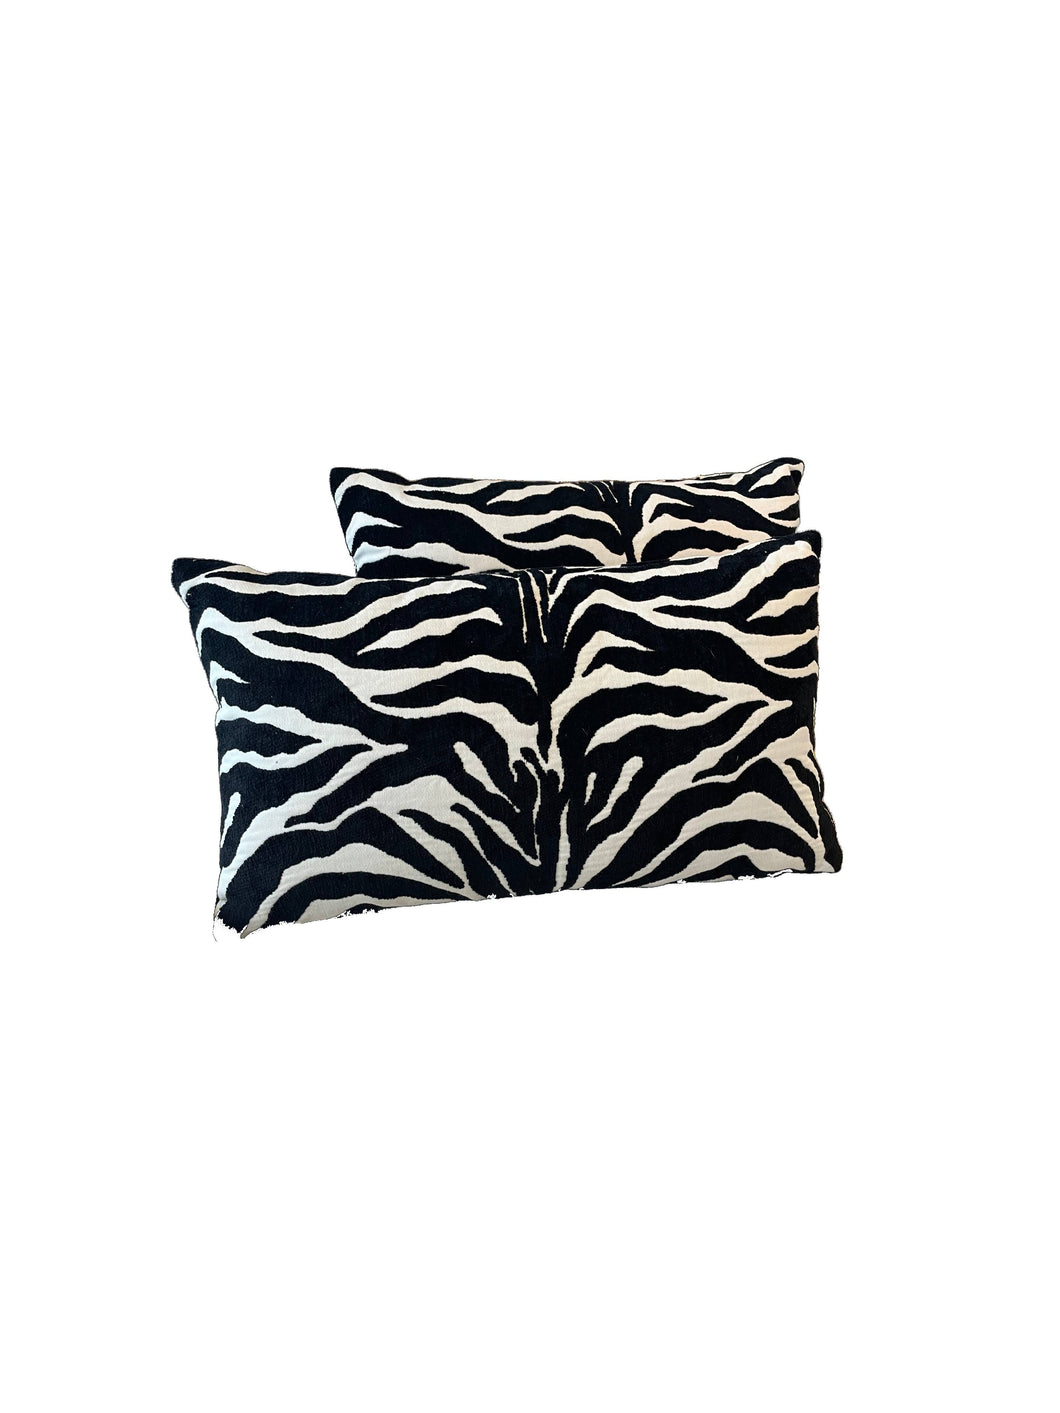 Pair of Outdoor Zebra Pillows